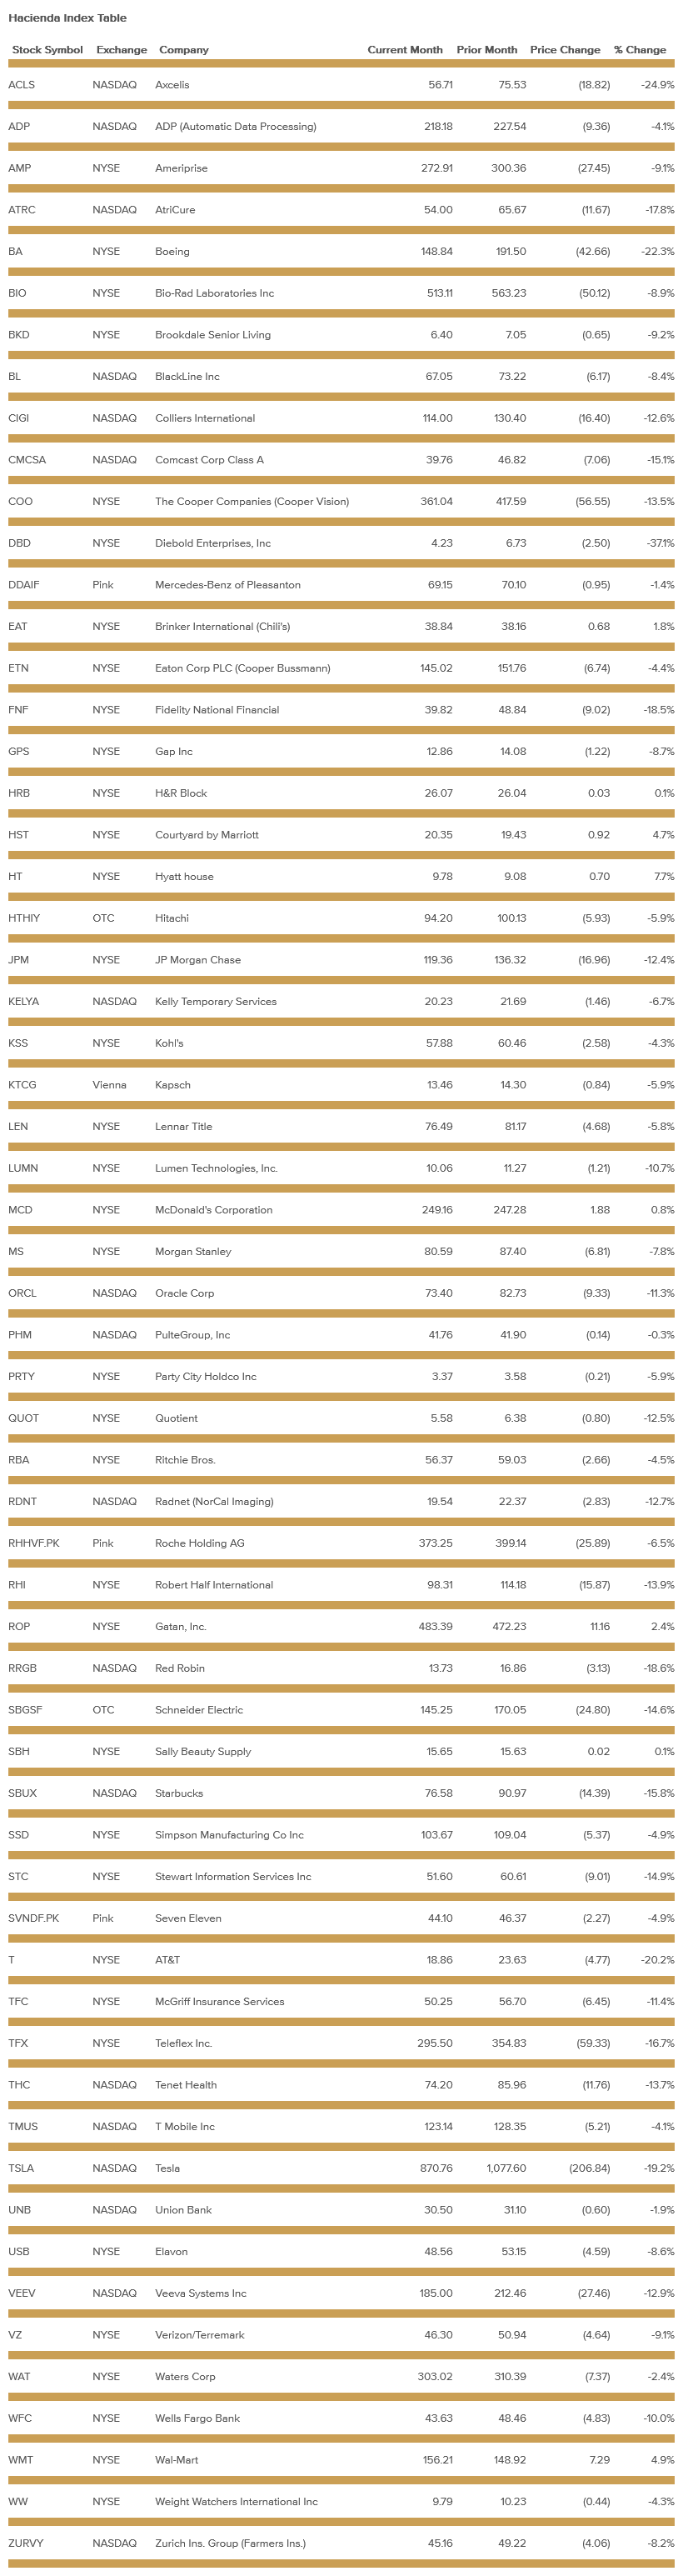 hacienda-index-table-may-2022.png